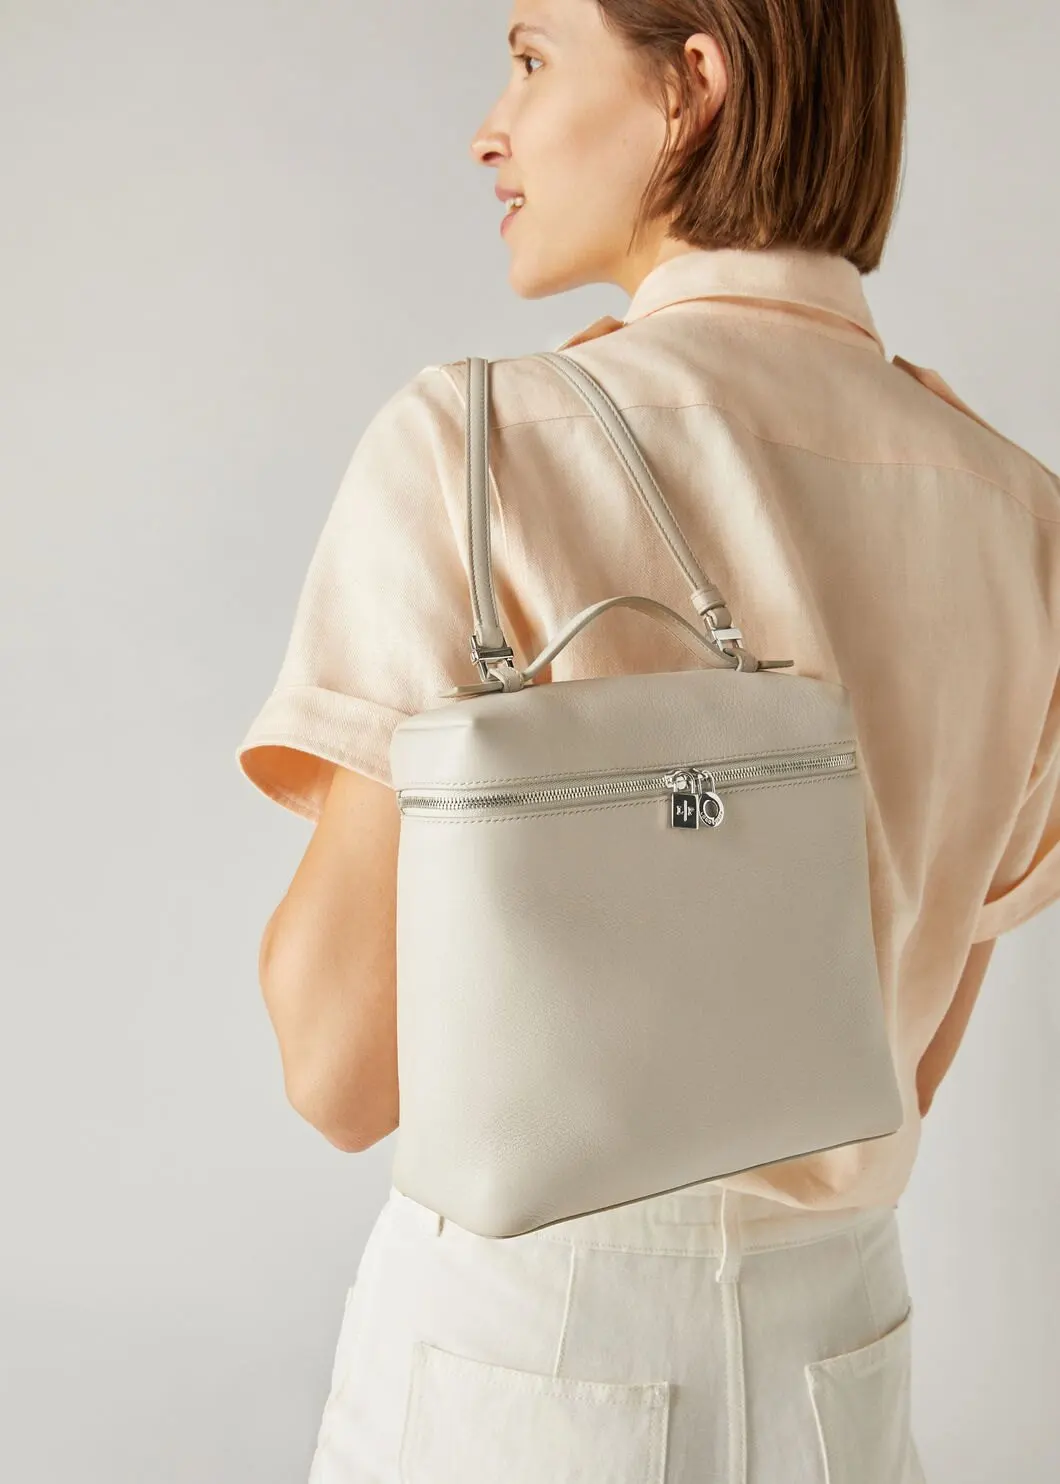 Cowhide Lcu With Lychee Markings  L23.5 Single Shoulder Bag Handbag Backpack LP